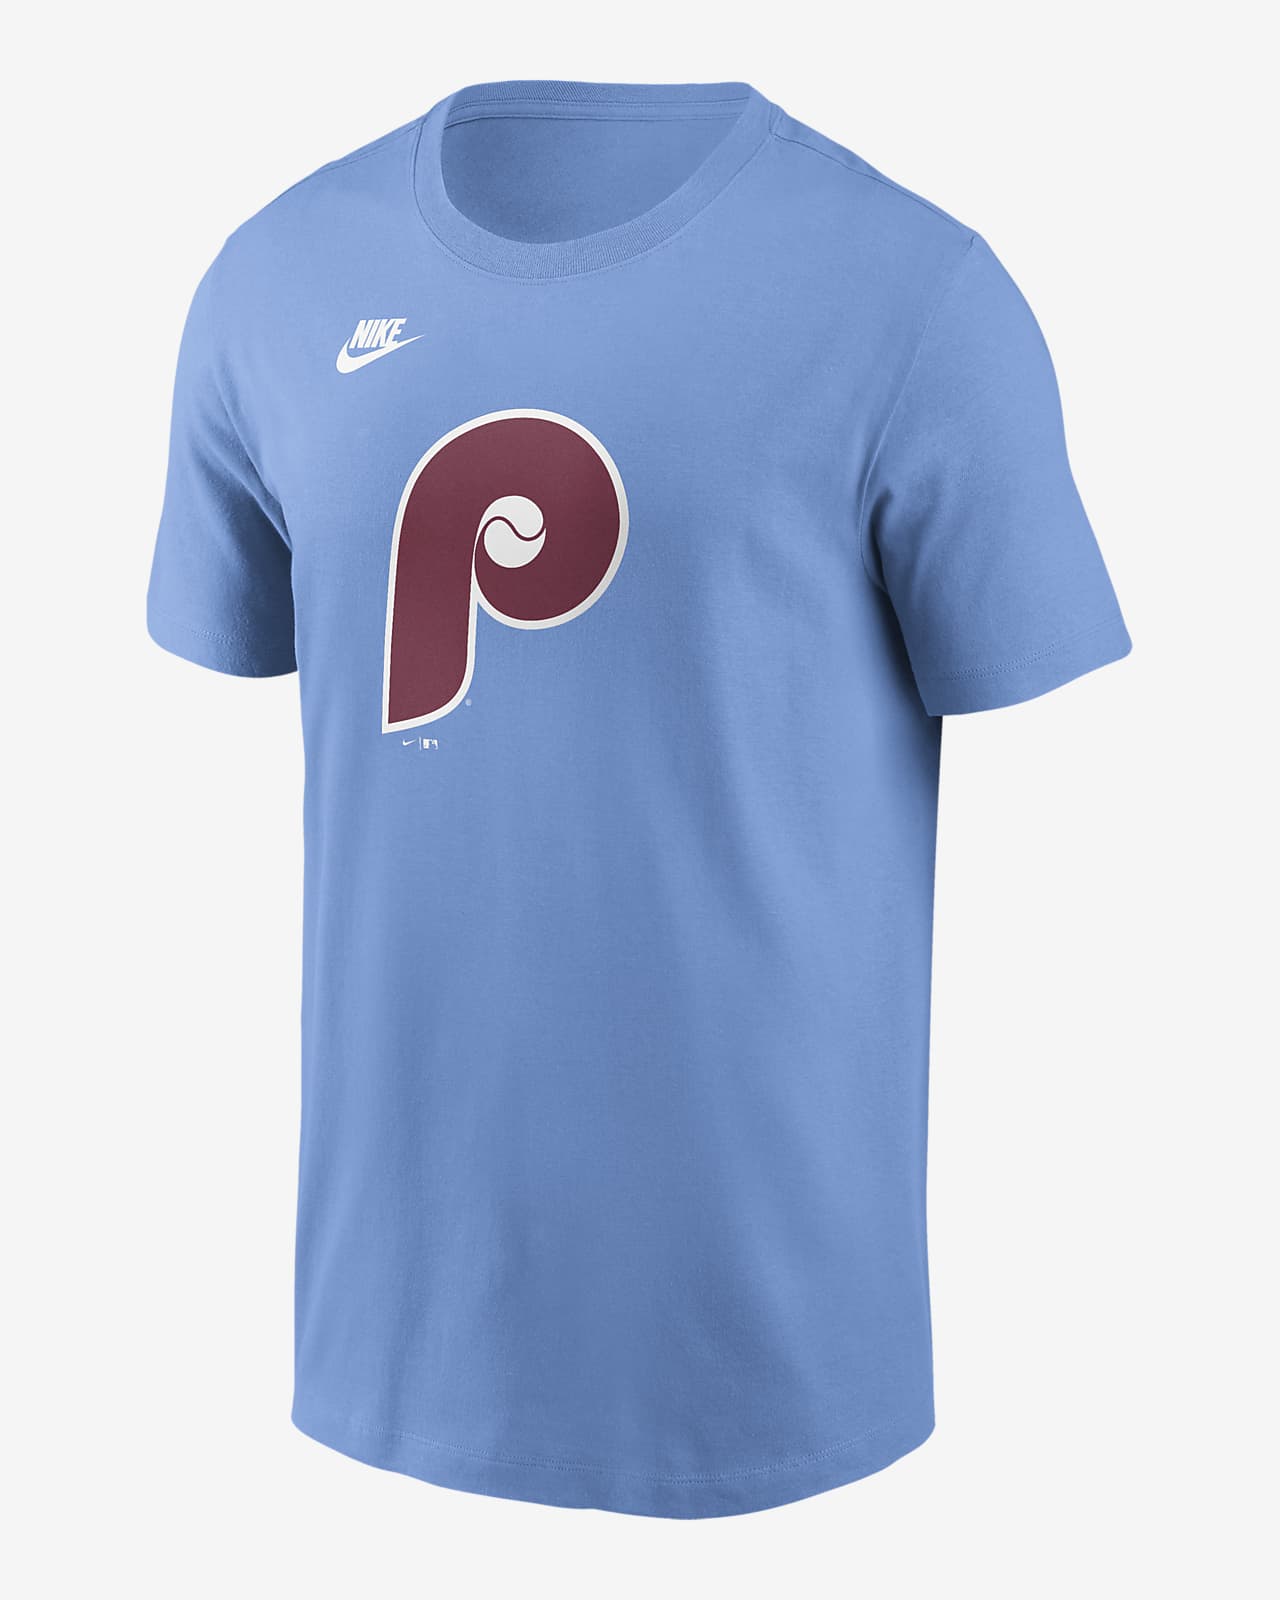 Philadelphia Phillies Cooperstown Logo Men's Nike MLB T-Shirt